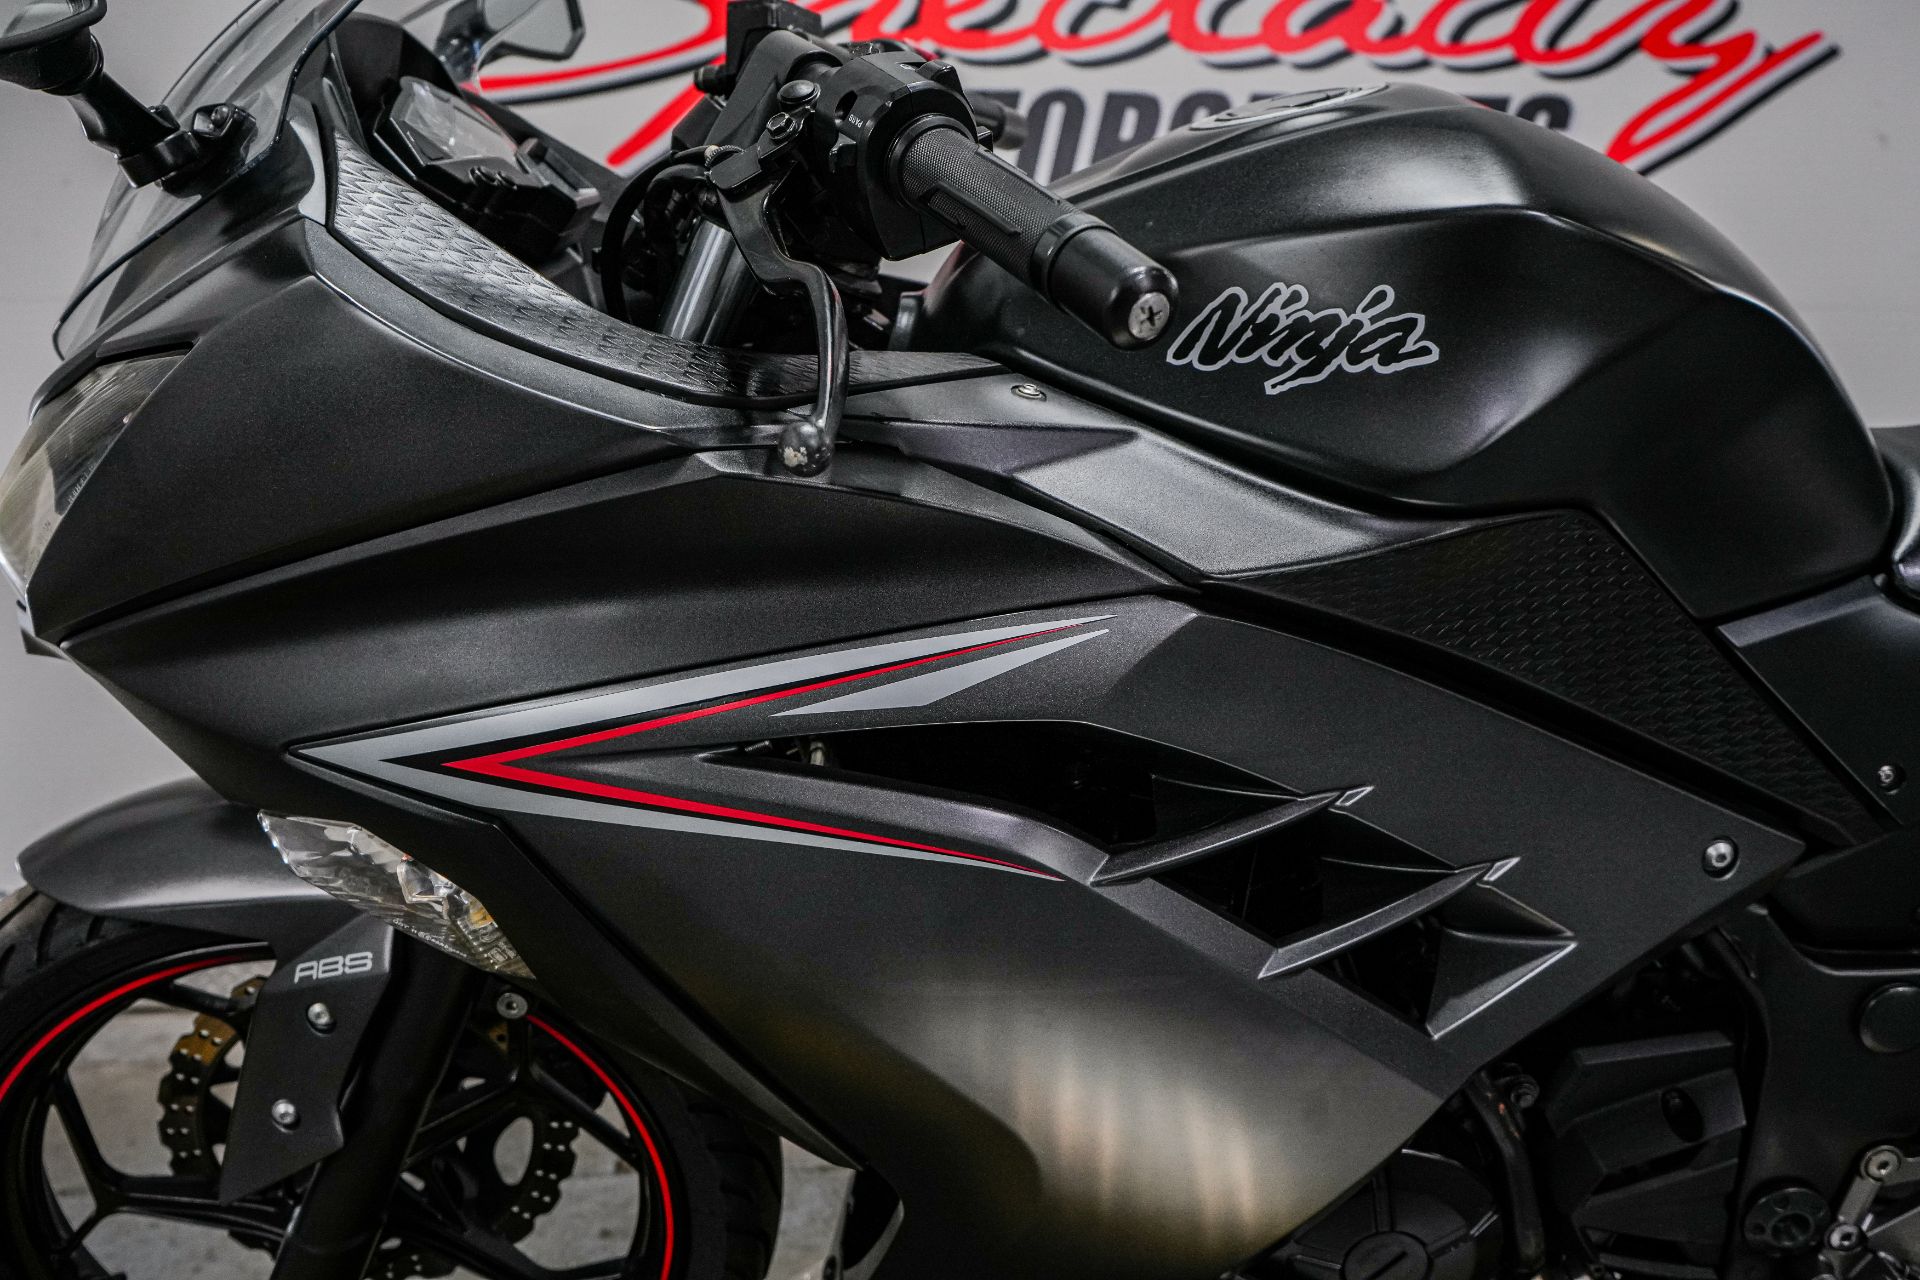 2014 Kawasaki Ninja® 300 ABS SE in Sacramento, California - Photo 5